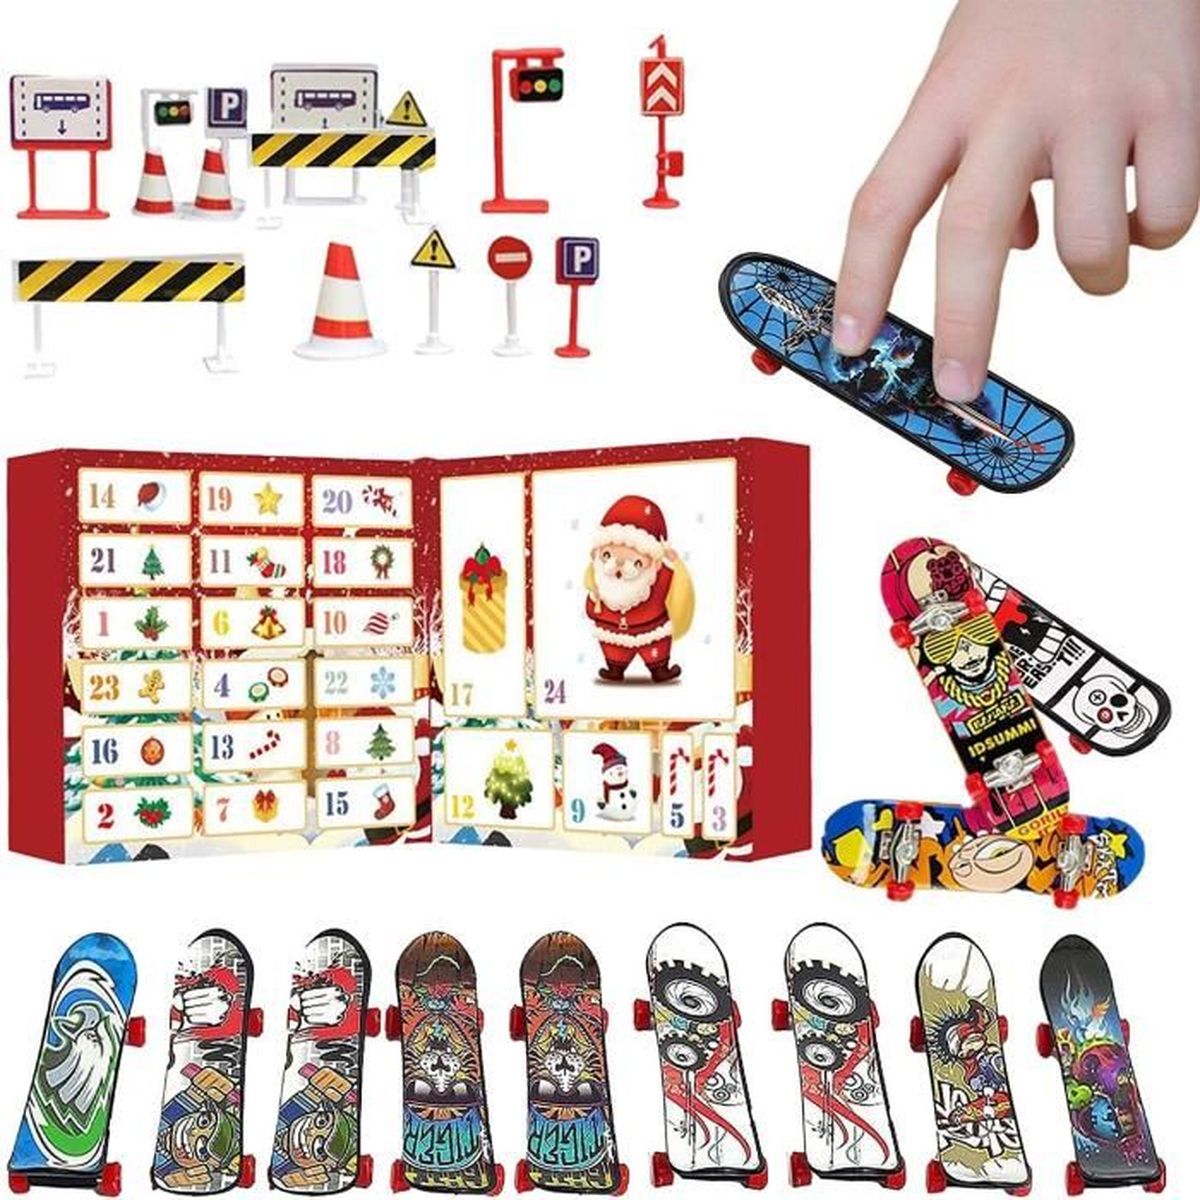 LIOOBO 3pcs Plastique Mini Planche à roulettes Jouet Pont Camion Doigt Conseil Skate Park garçon Enfants Enfants Cadeau Couleur au Hasard 